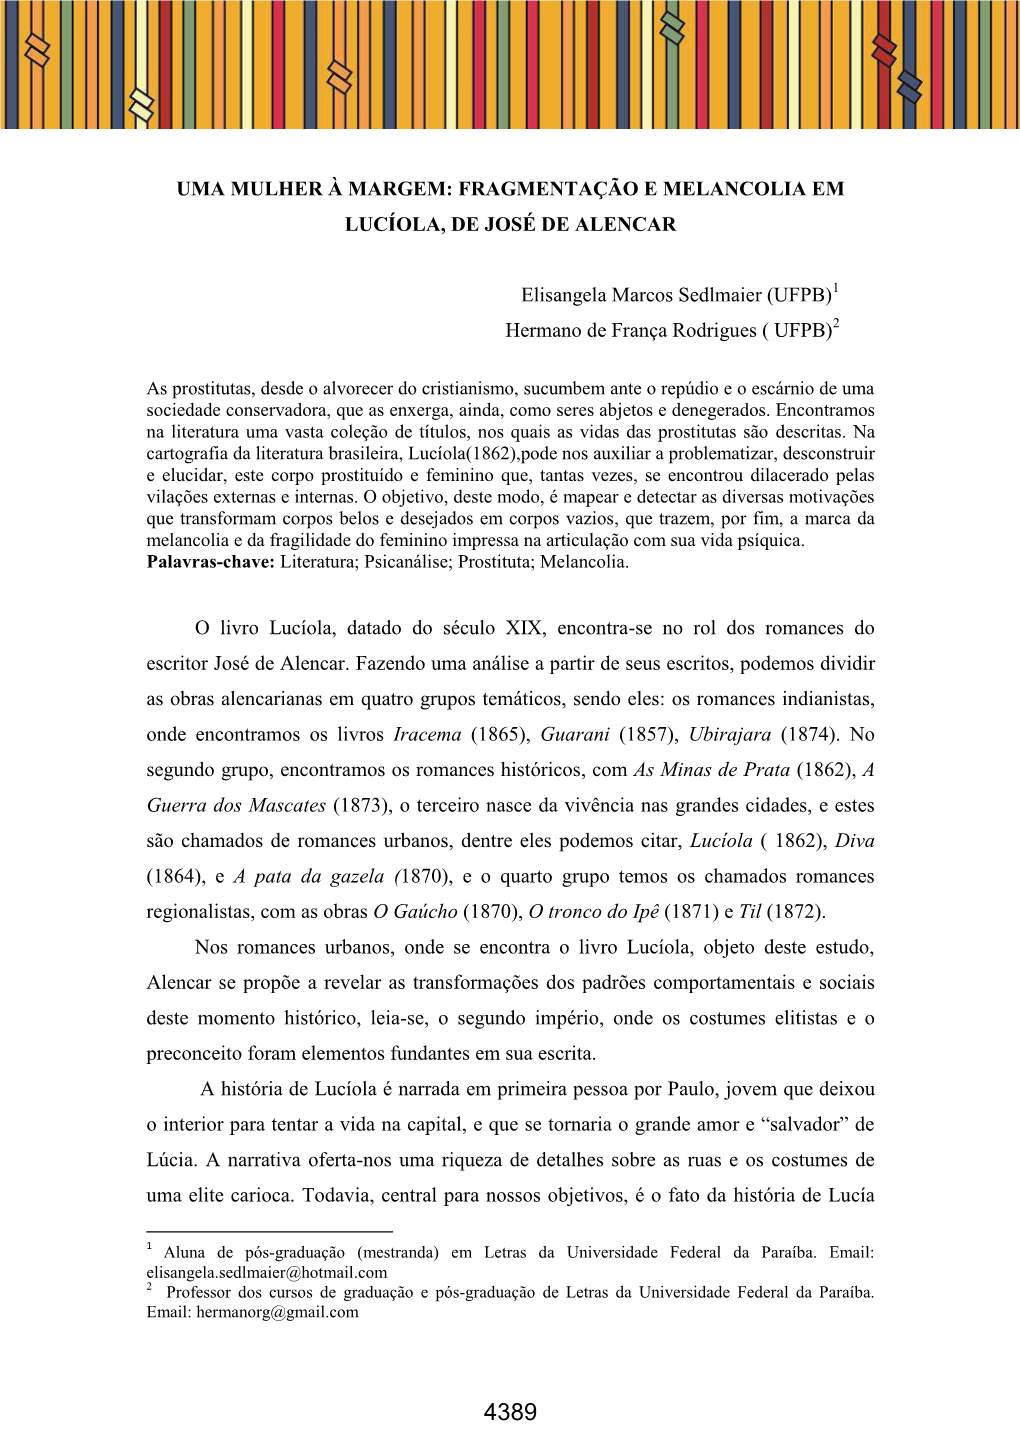 Fragmentação E Melancolia Em Lucíola, De José De Alencar